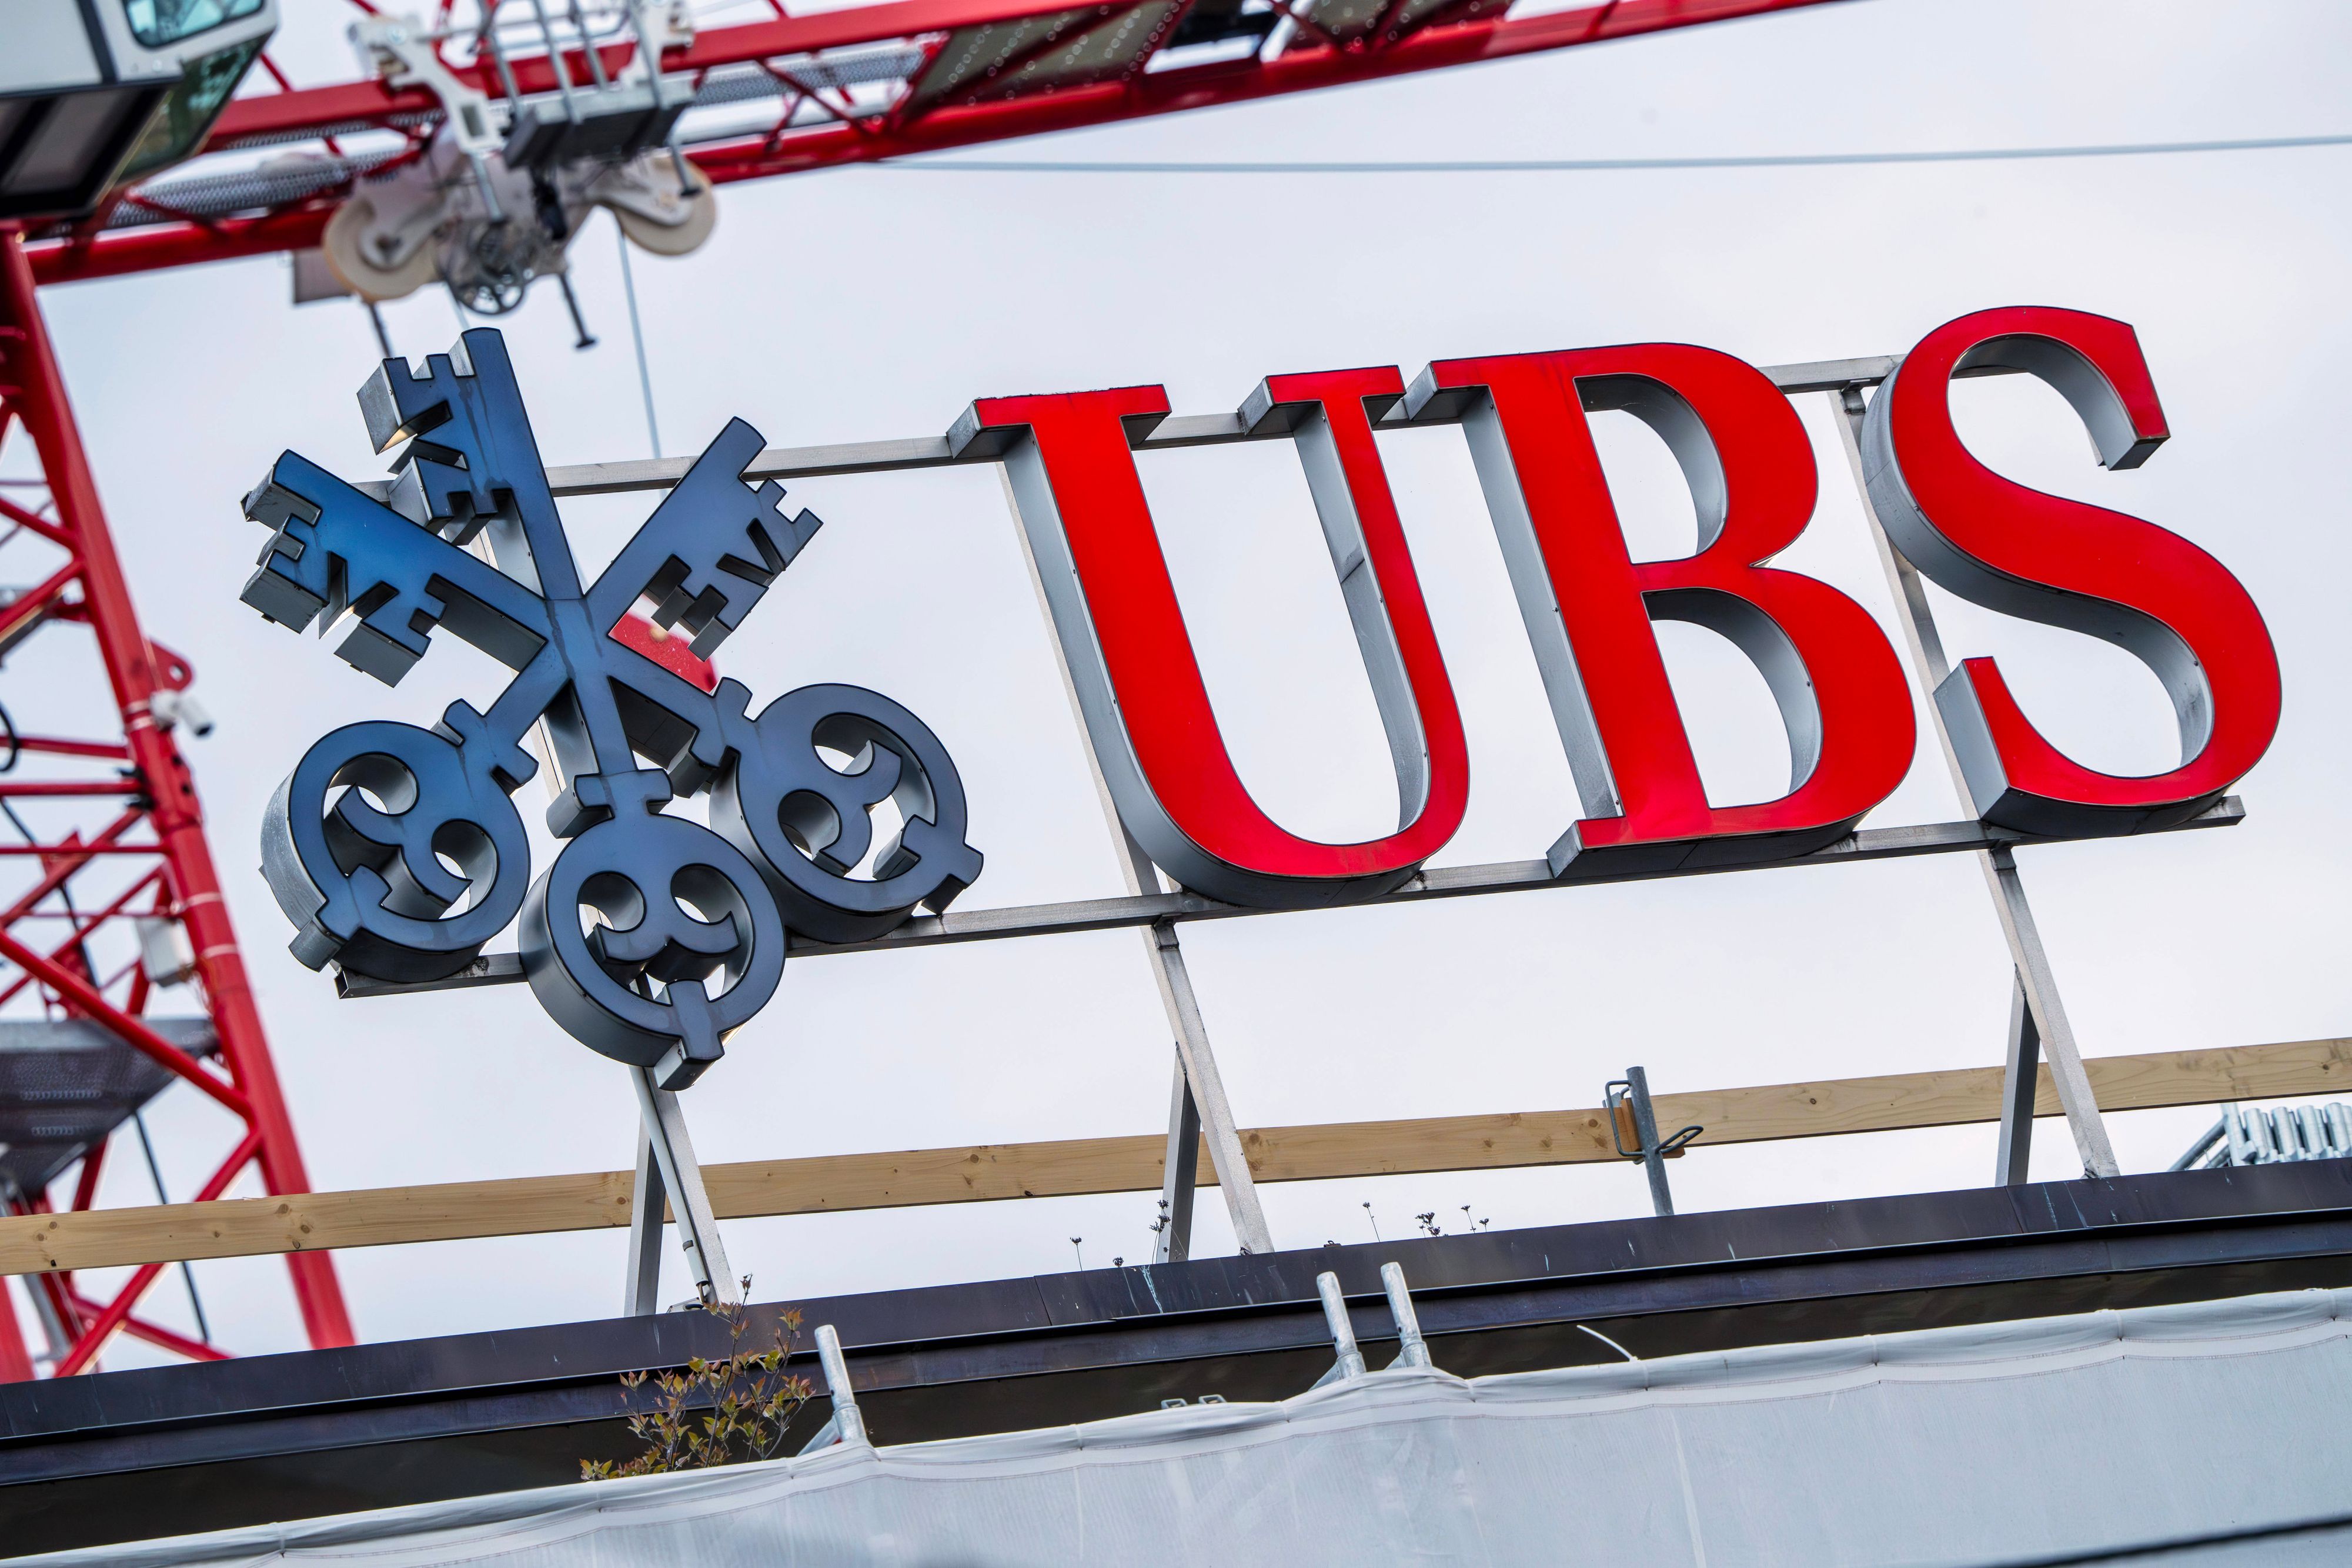 UBS renoue avec les bénéfices après deux trimestres dans le rouge